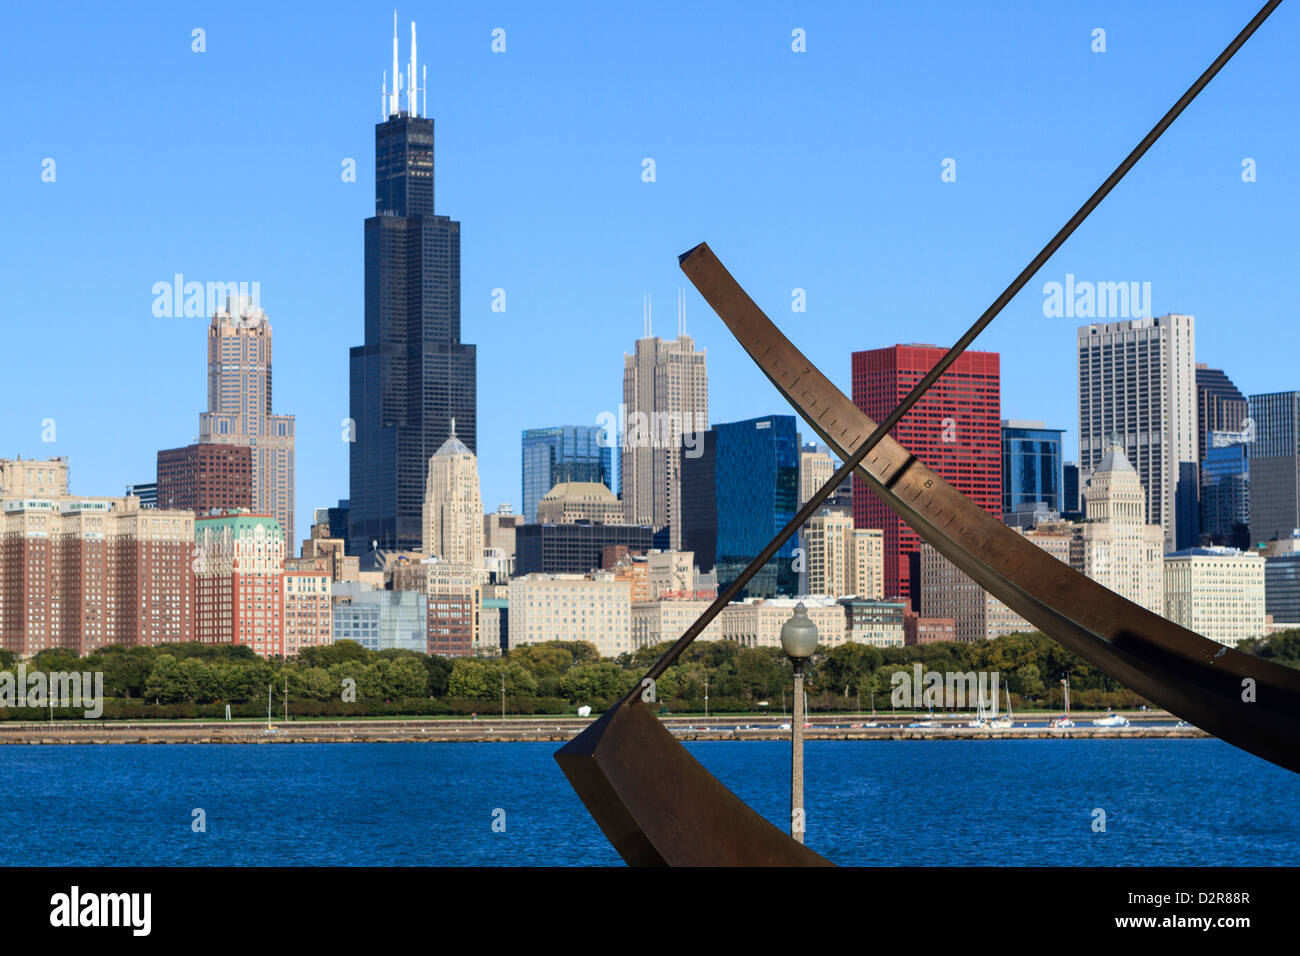 La ville de Chicago, l'Adler Planetarium cadran solaire en premier plan avec la Willis Tower, au-delà, Chicago, Illinois, États-Unis Banque D'Images